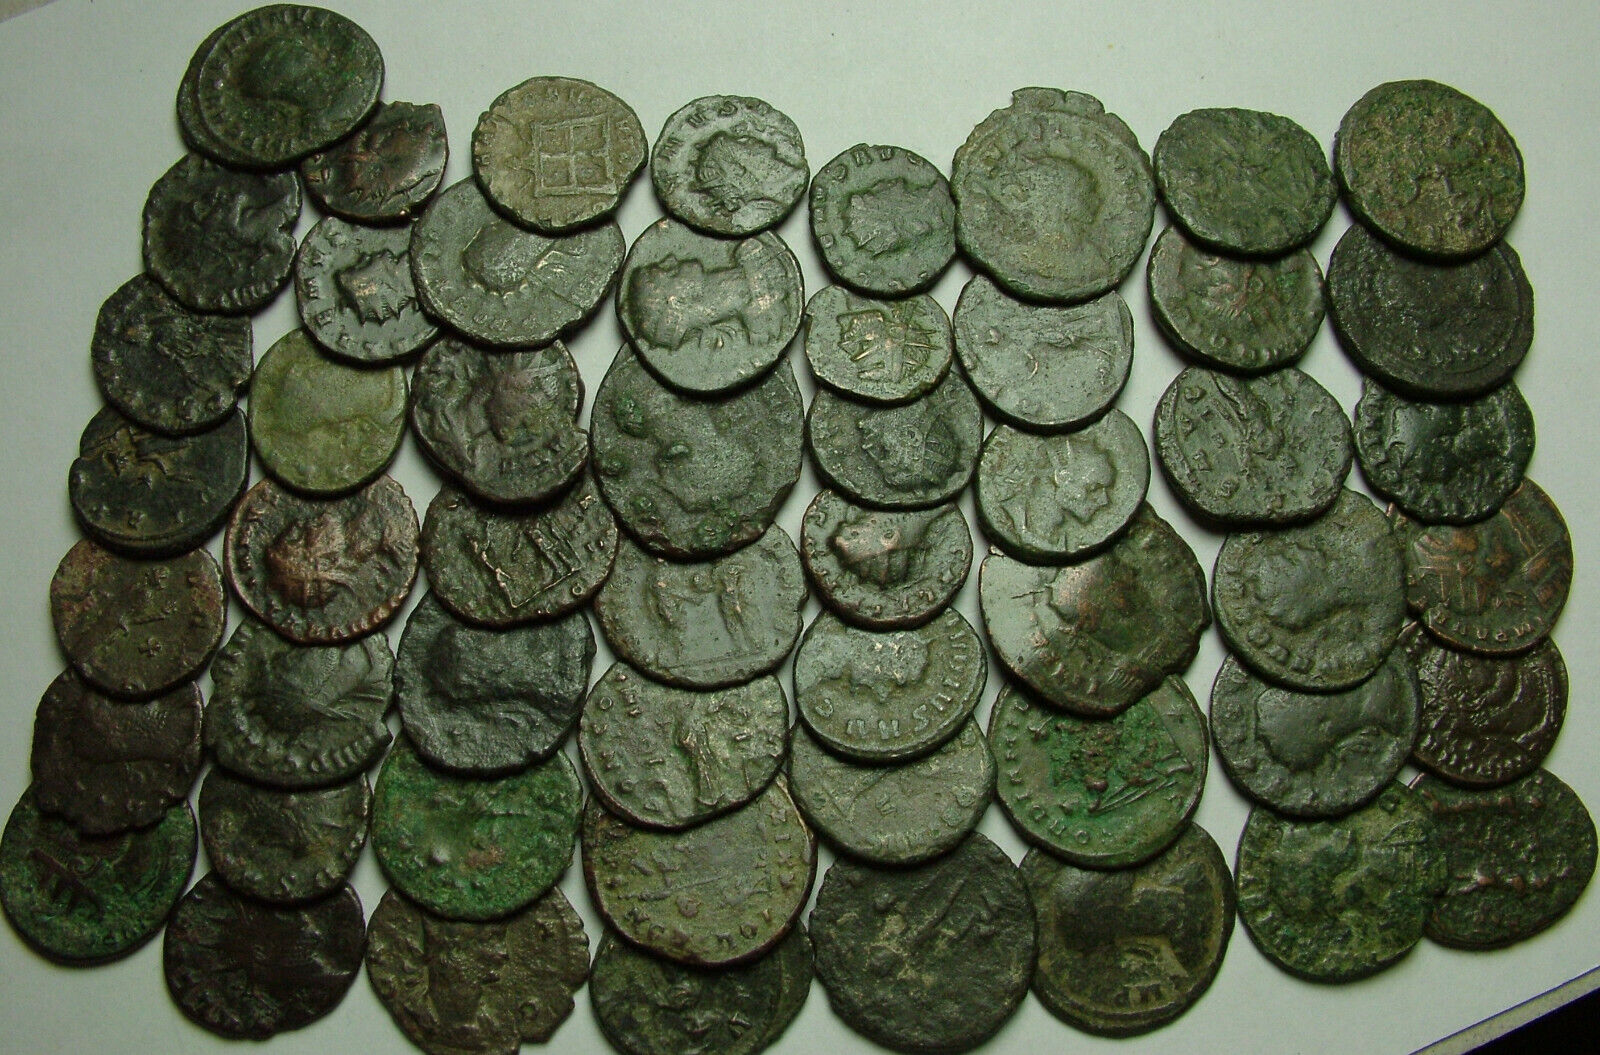 Lot of 3 Rare original Ancient Roman Antoninianus coins Probus Aurelian Claudius Без бренда - фотография #2